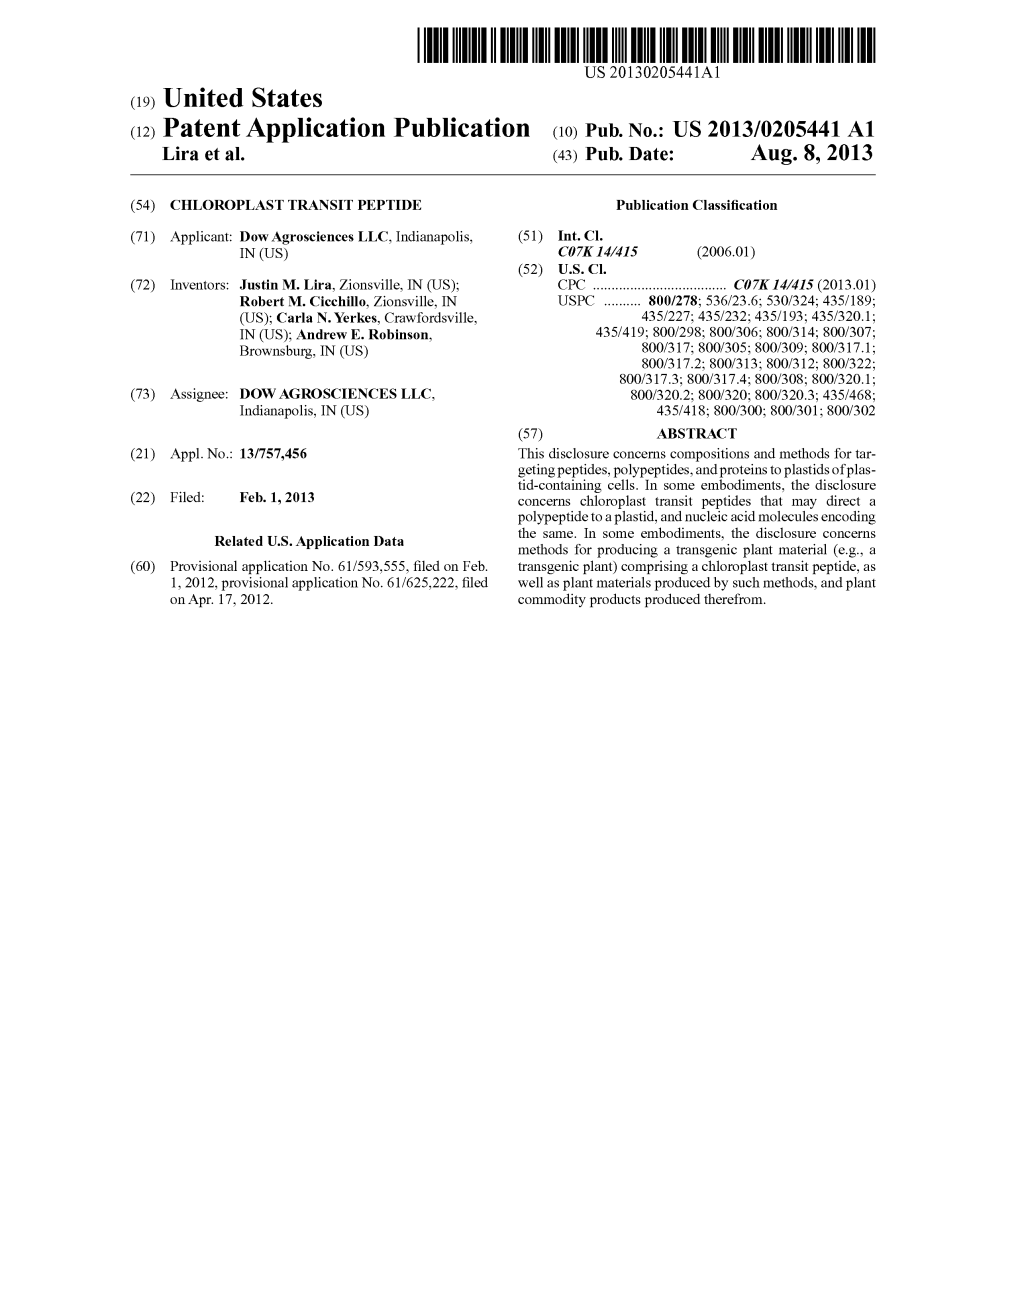 (12) Patent Application Publication (10) Pub. No.: US 2013/0205441 A1 Lira Et Al